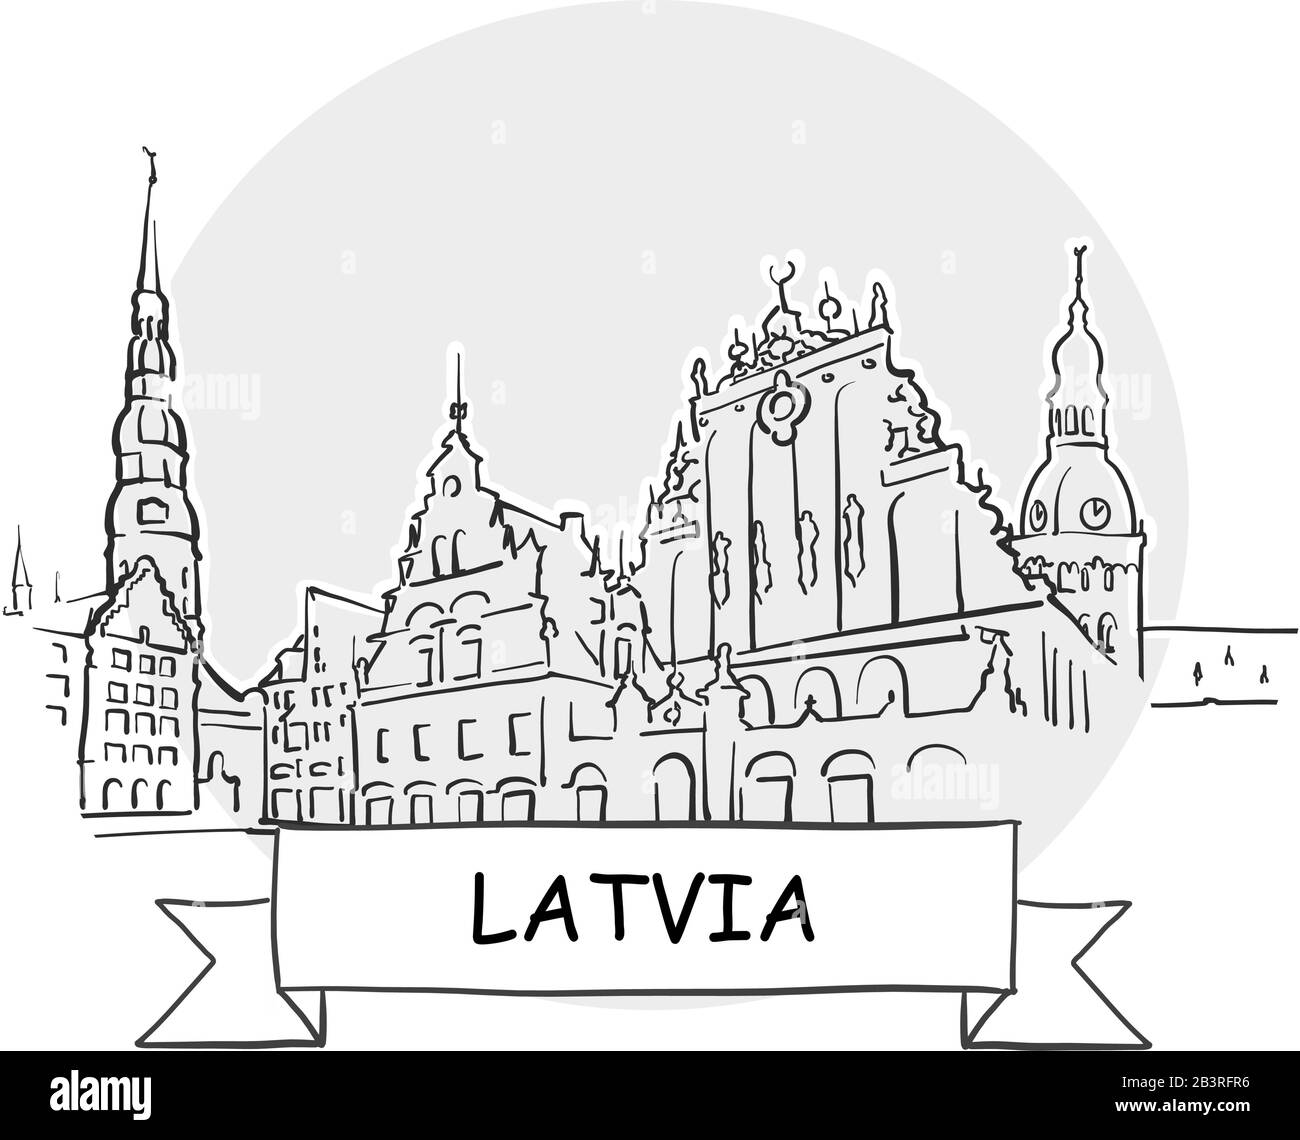 Lettland Hand-Drawn Stadtvektor-Zeichen. Schwarze Strichzeichnung mit Farbband und Titel. Stock Vektor